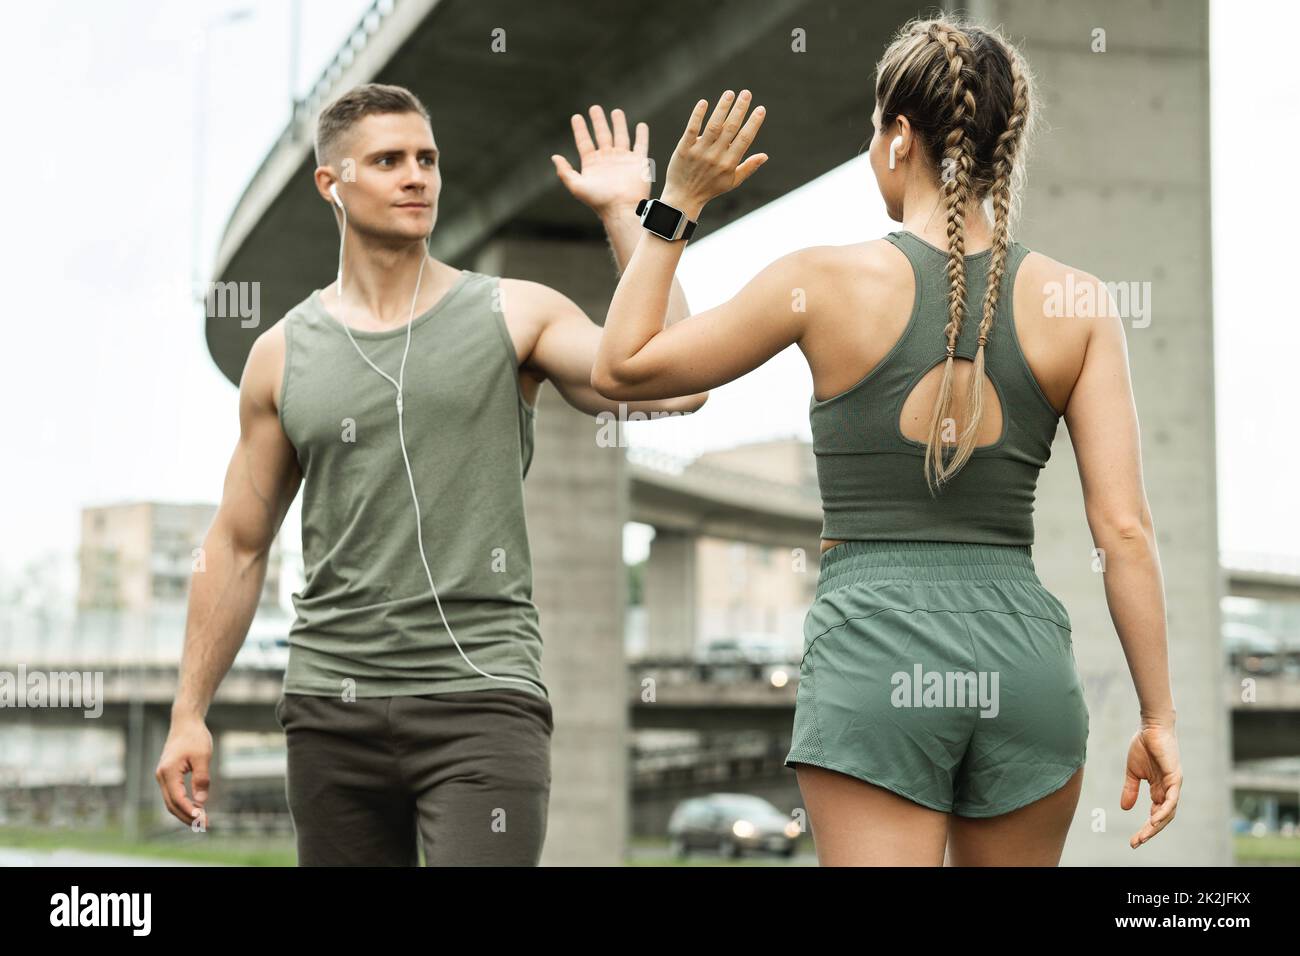 Zwei athletische Menschen begrüßen sich beim Jogging-Workout mit hohen fünf Gesten Stockfoto